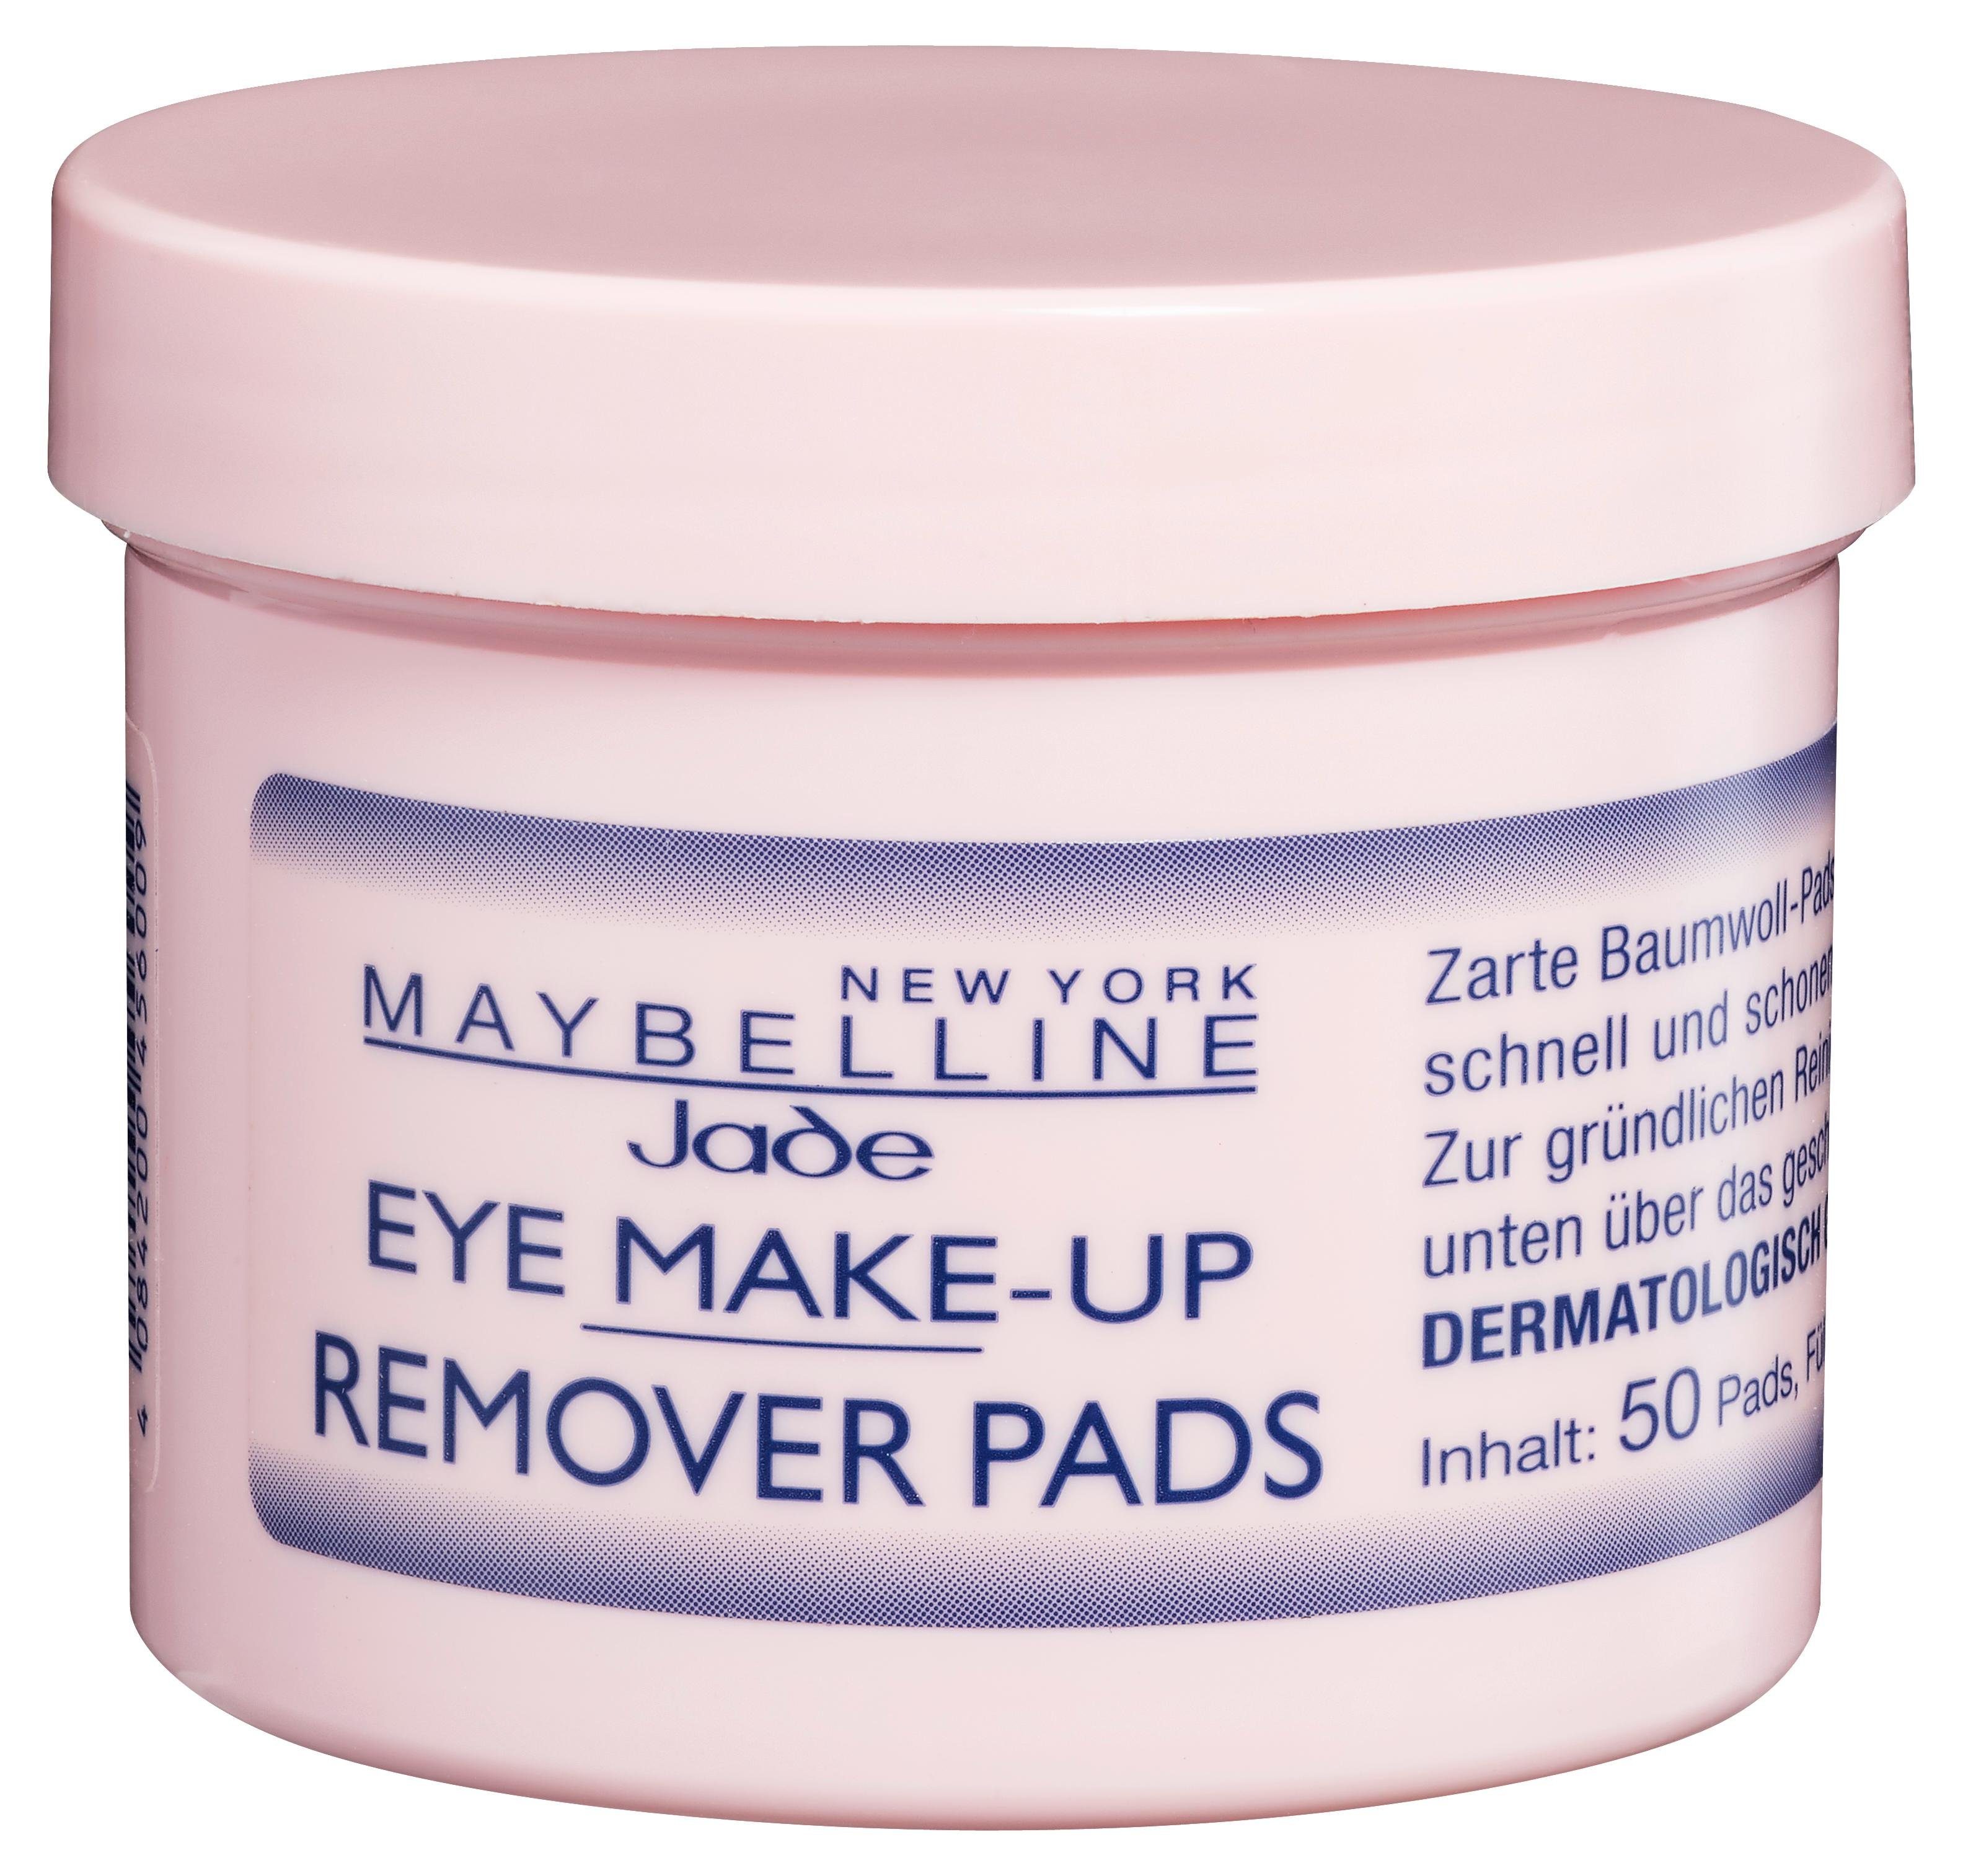 MAYBELLINE NEW YORK Augen-Make-up-Entferner Eye Make-Up Pads Remover